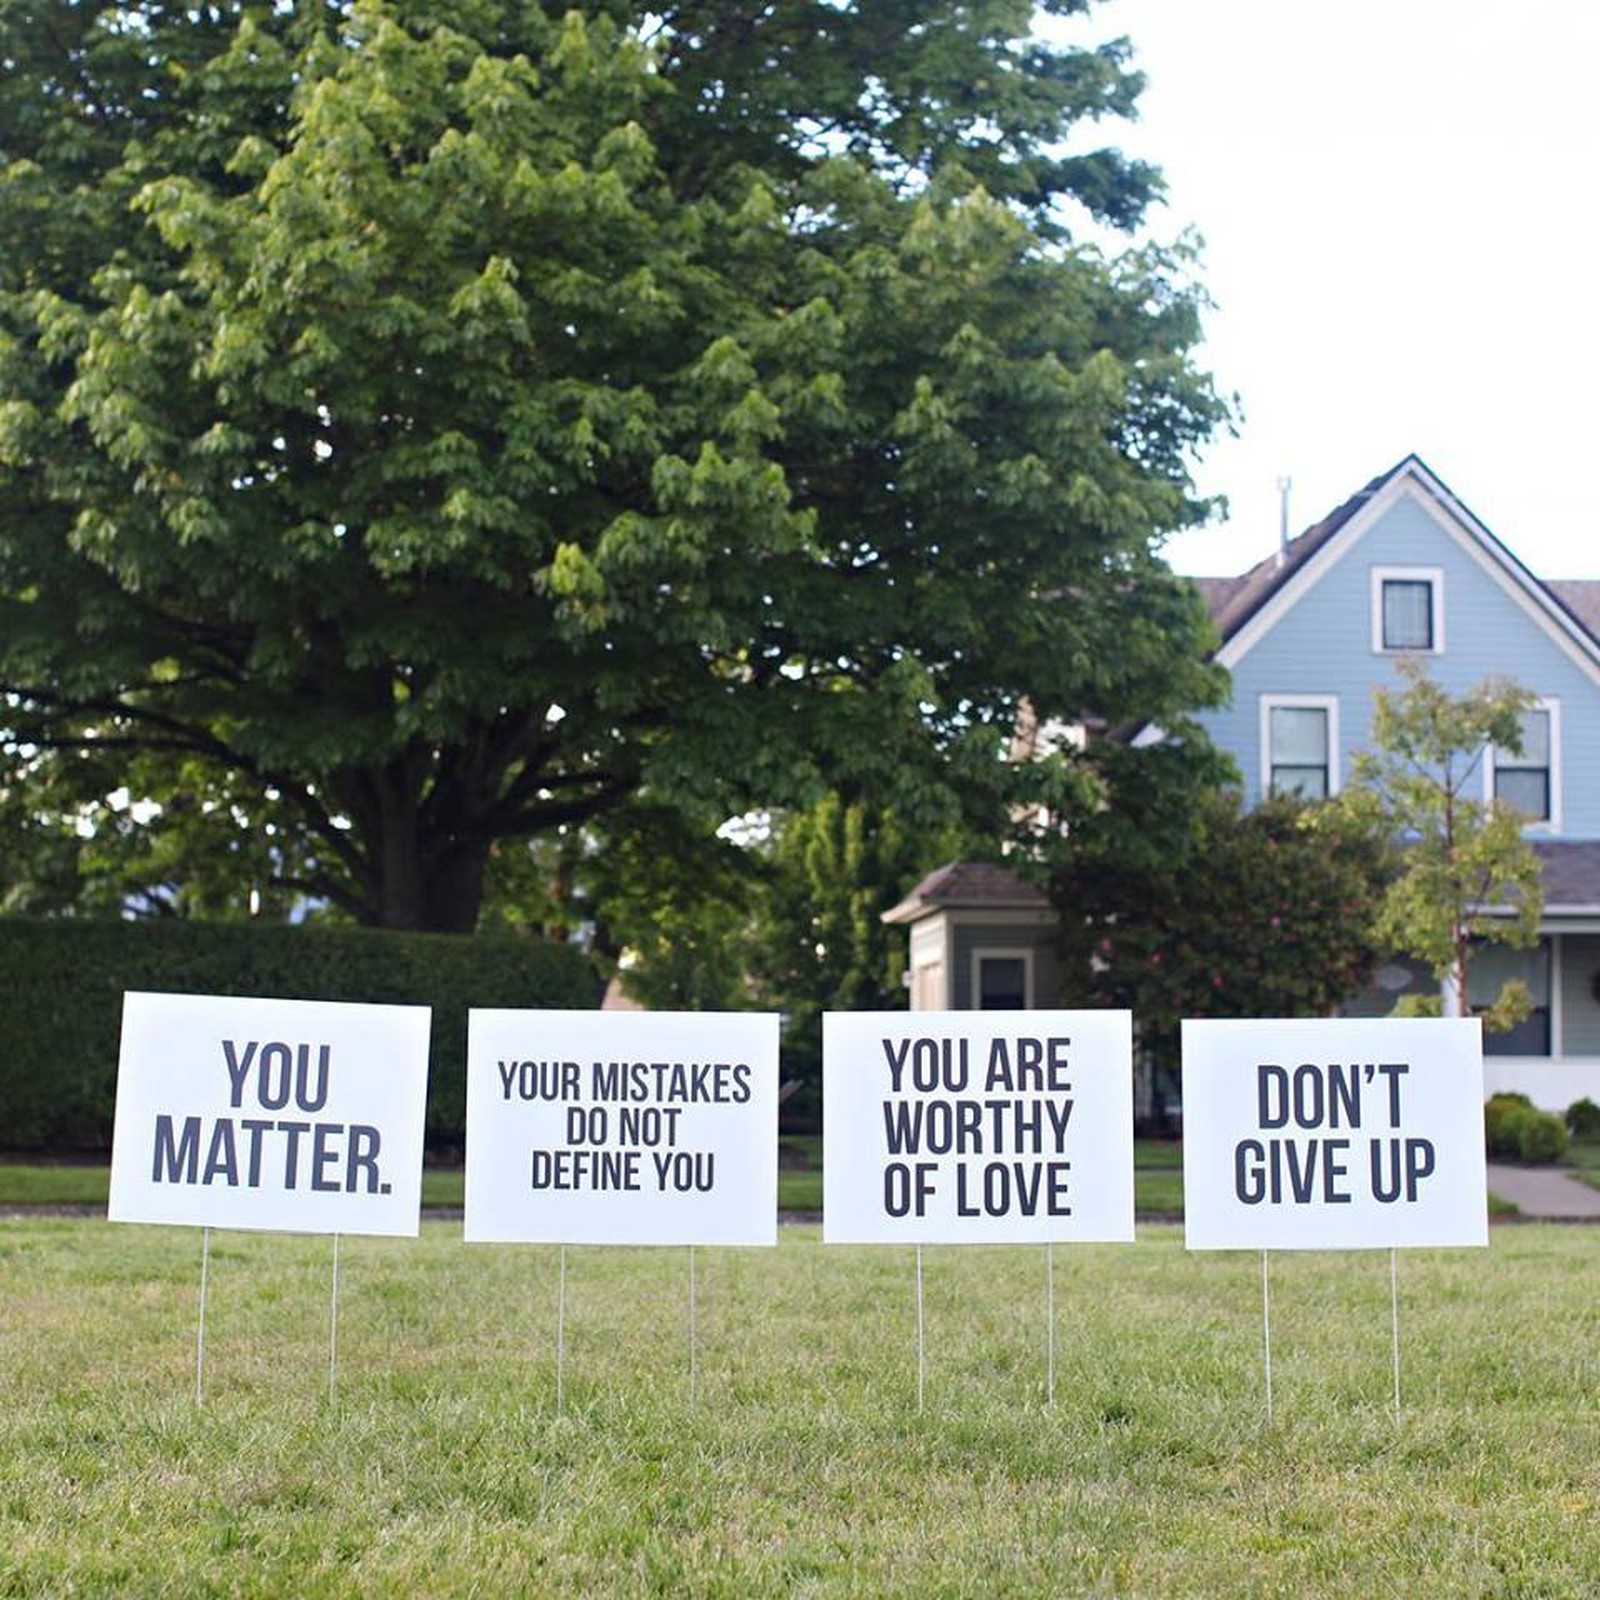 Dona de casa do Oregon espalha mensagens motivacionais no jardim de casa